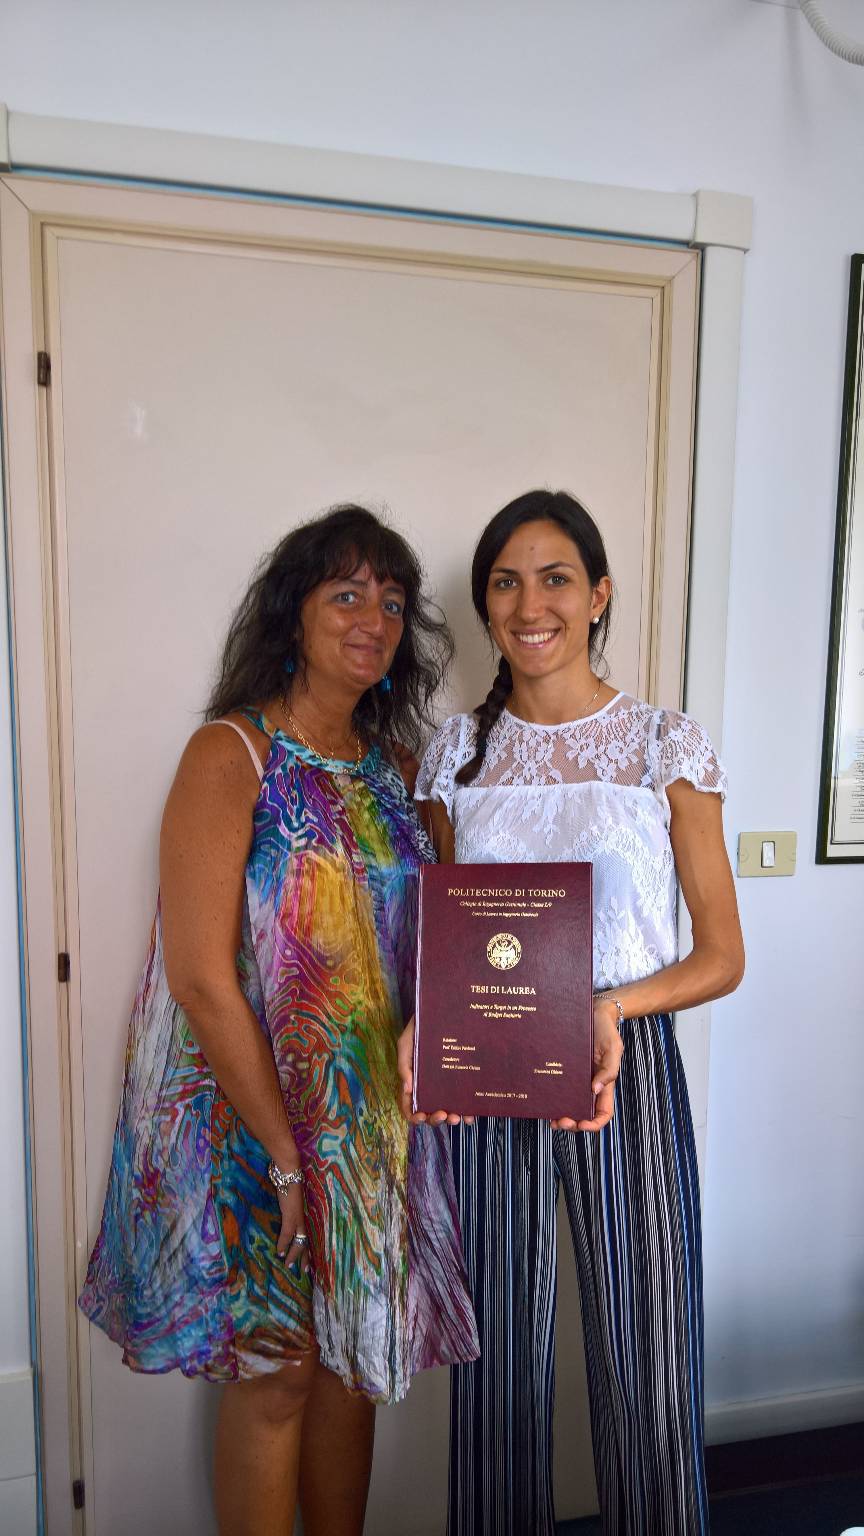 Francesca Ghione si laurea portando la tesi sul processo di budget dell’Asl Cn1